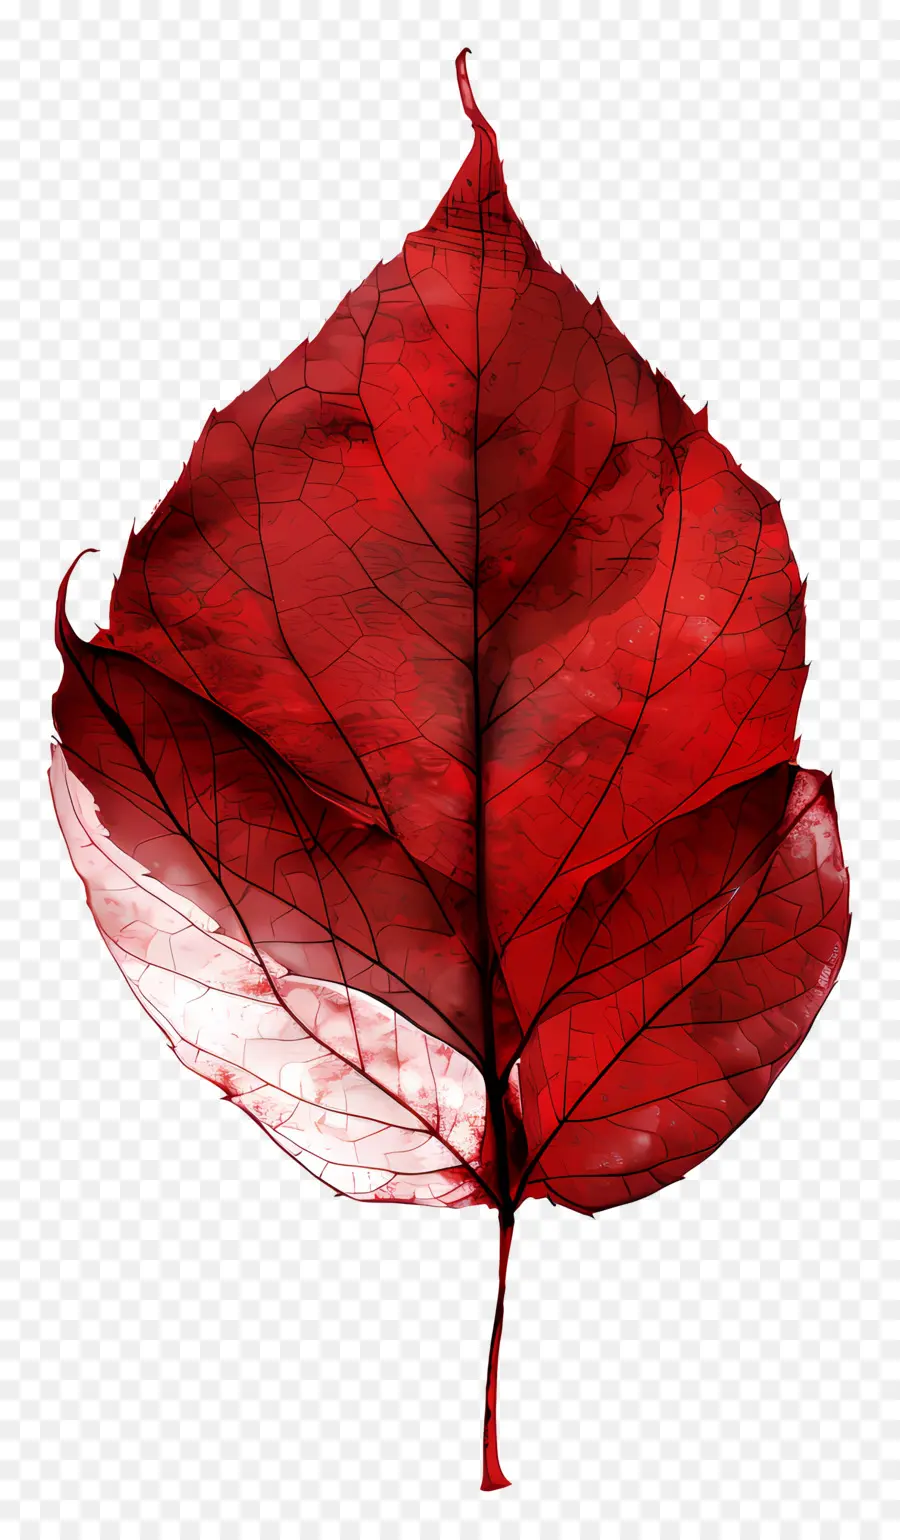 foglia rossa foglia rossa vene gambo bianco foglia lucida - Foglia rossa con vene visibili, lucenti, riflettenti. 
Atmosfera oscura